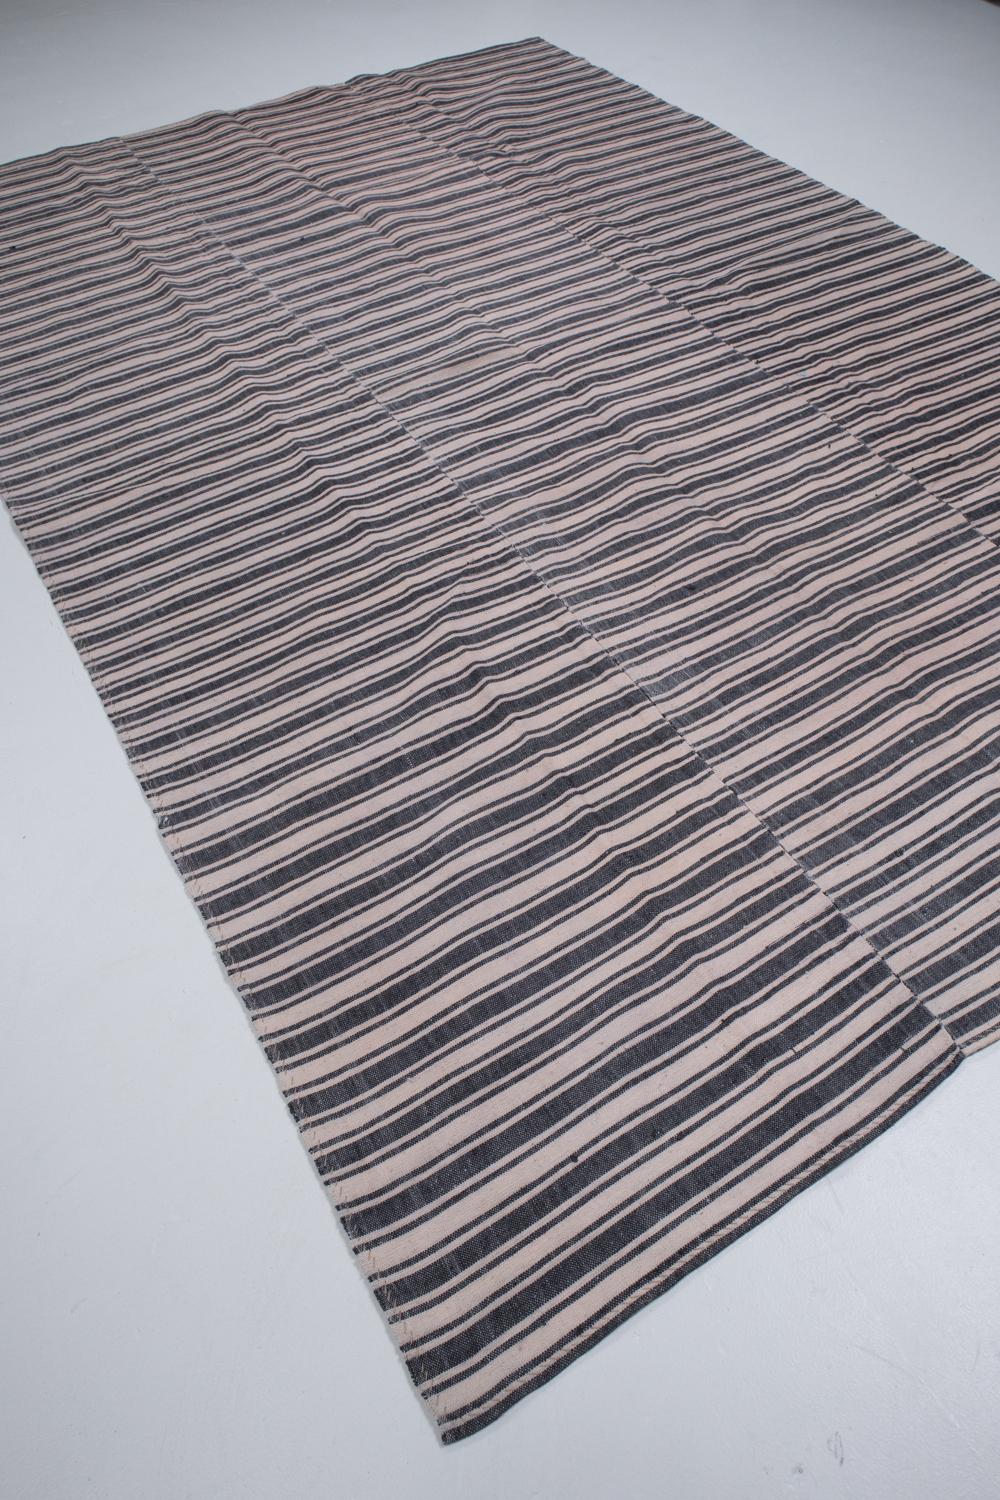 Wool Vintage Turkish Striped Kilim Rug